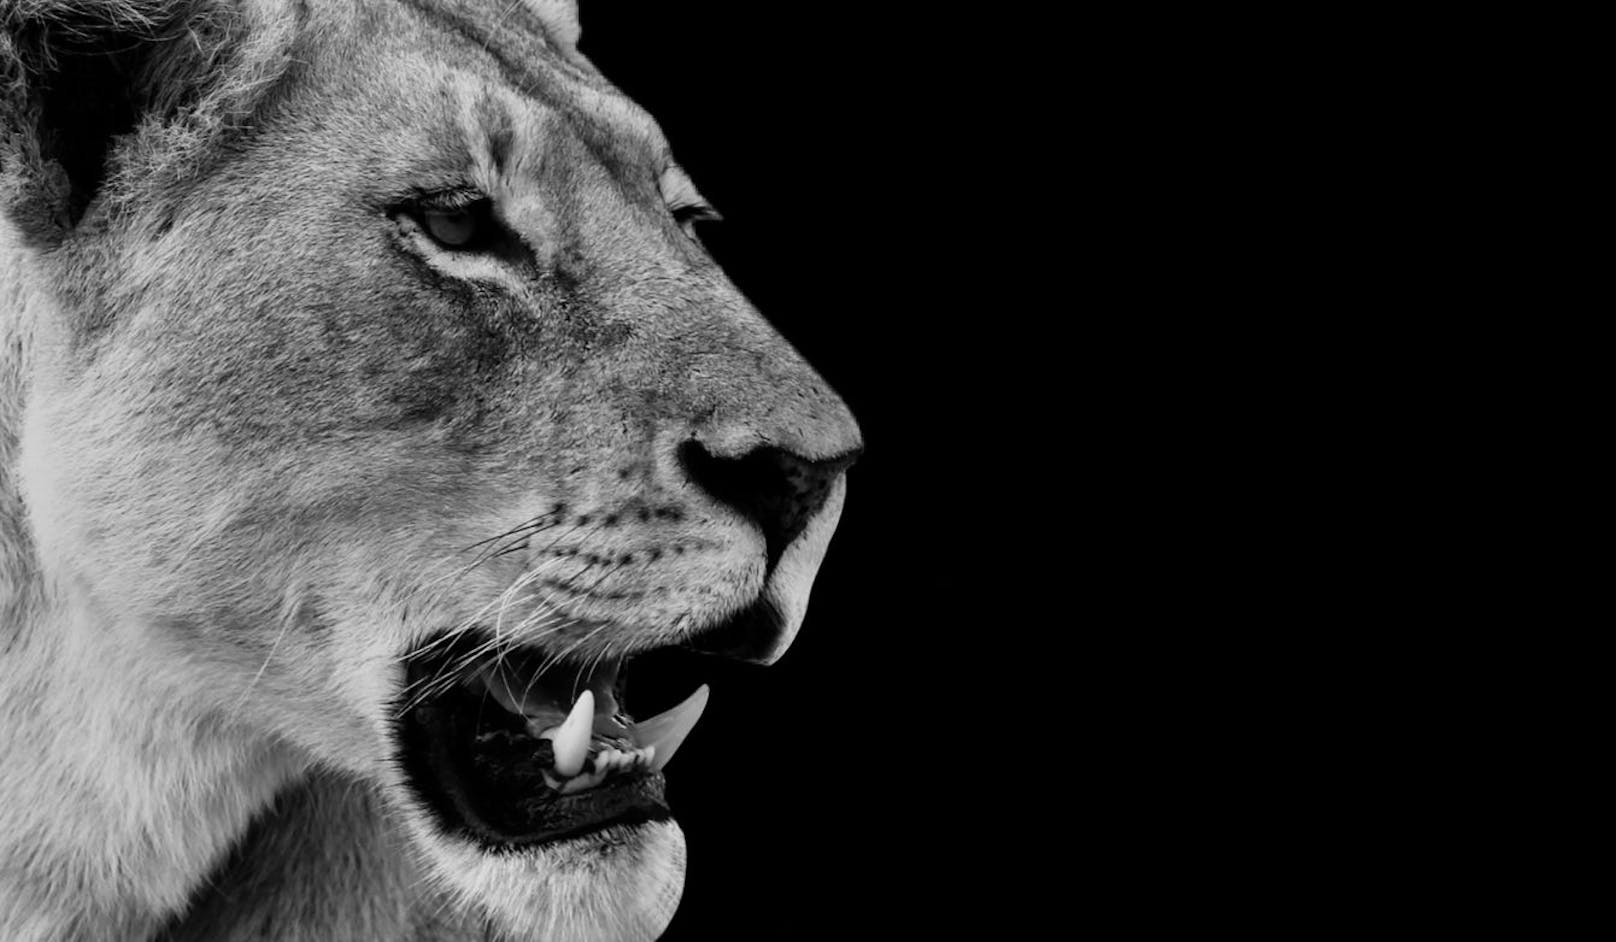 Seltsam aber wahr - im afrikanischen Tschad galten Löwen seit 20 Jahren als ausgerottet. Bis jetzt!